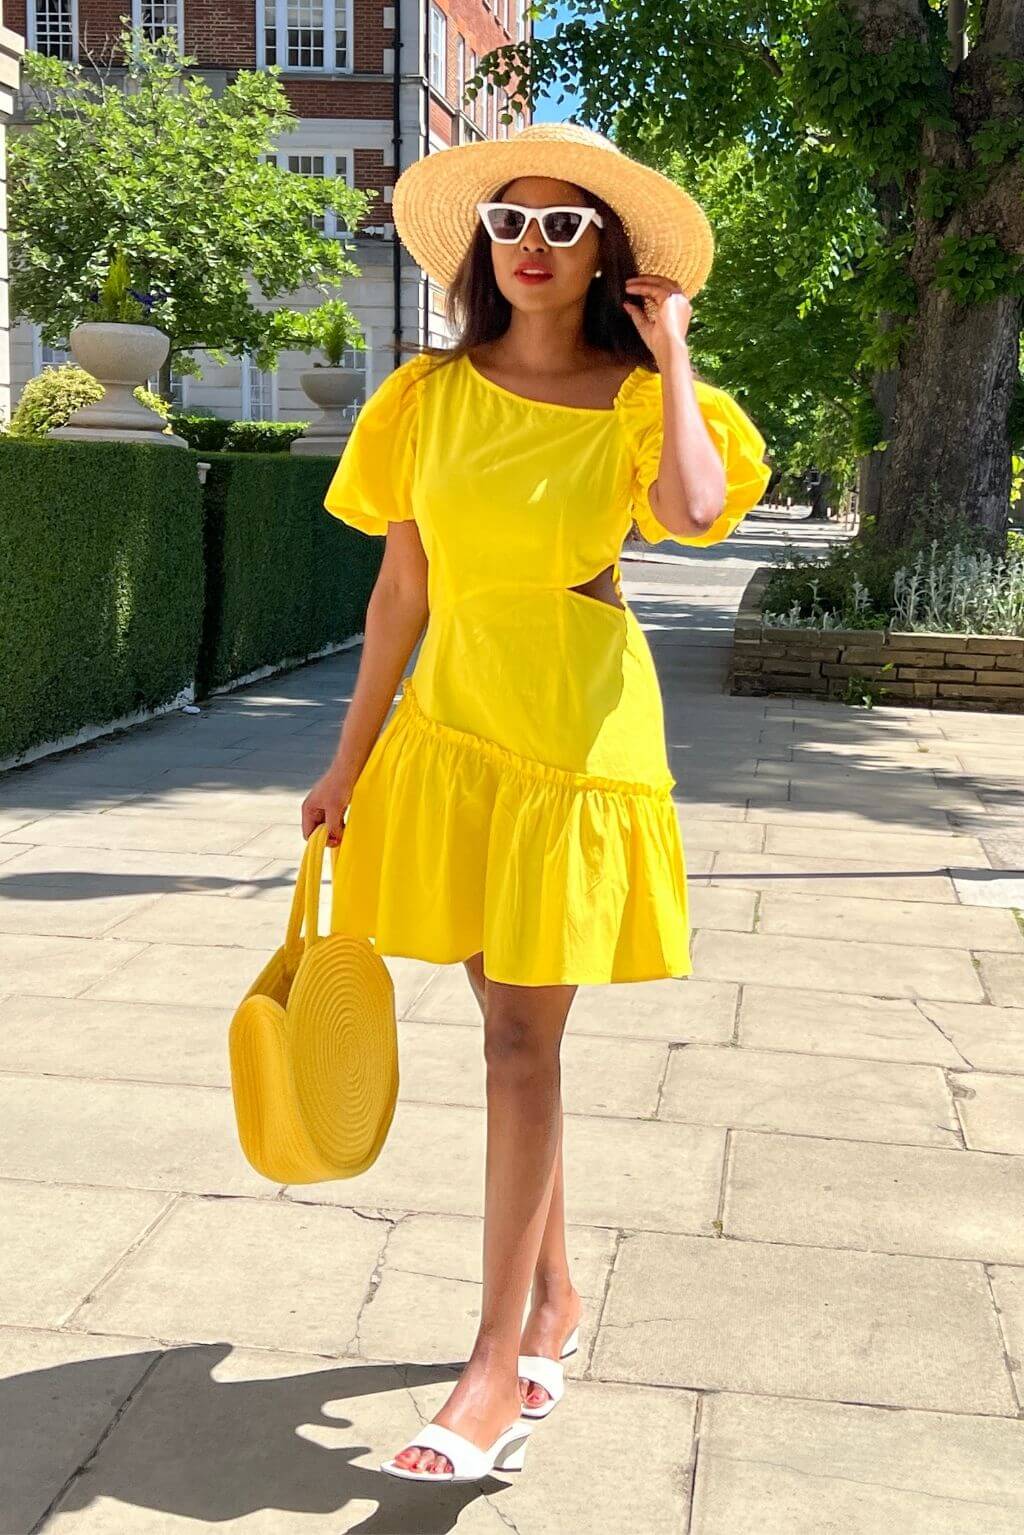 yellow sun dress